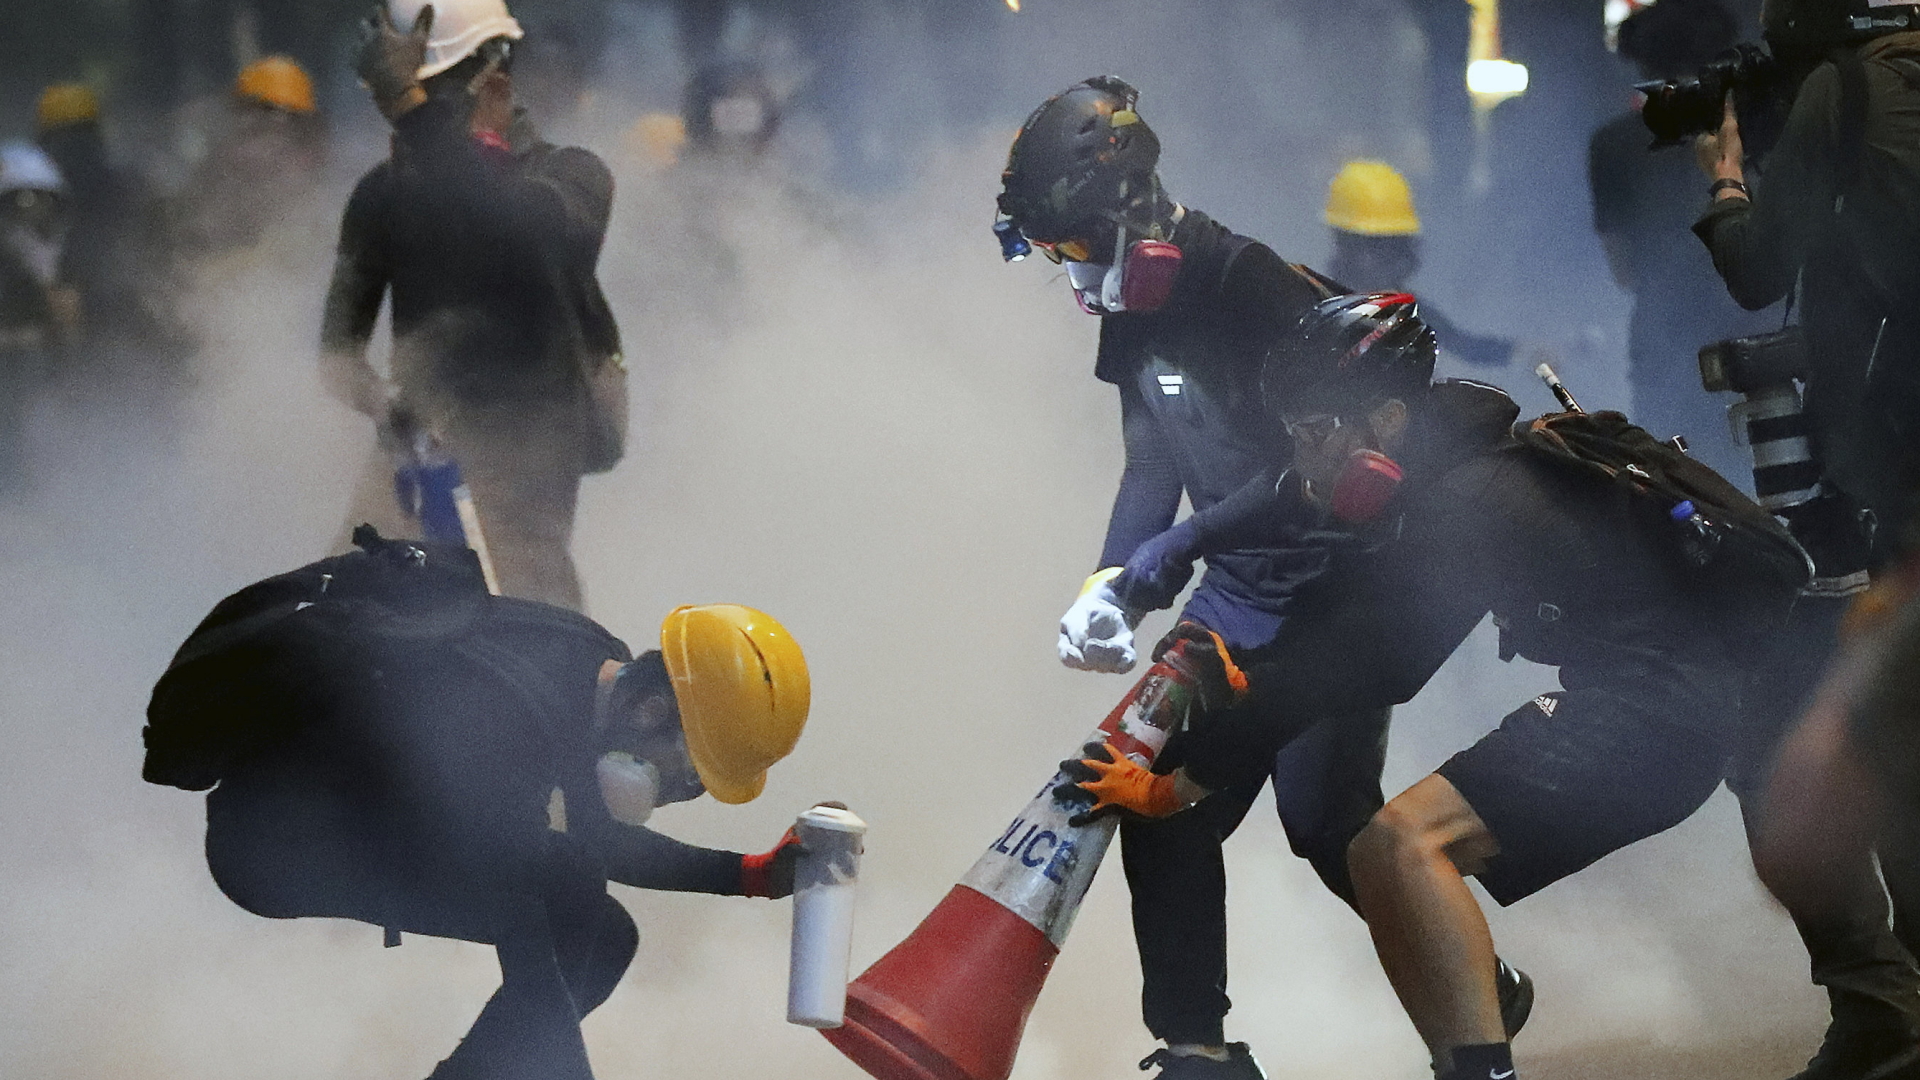 Demonstranten in Hongkong in Tränengaswolke